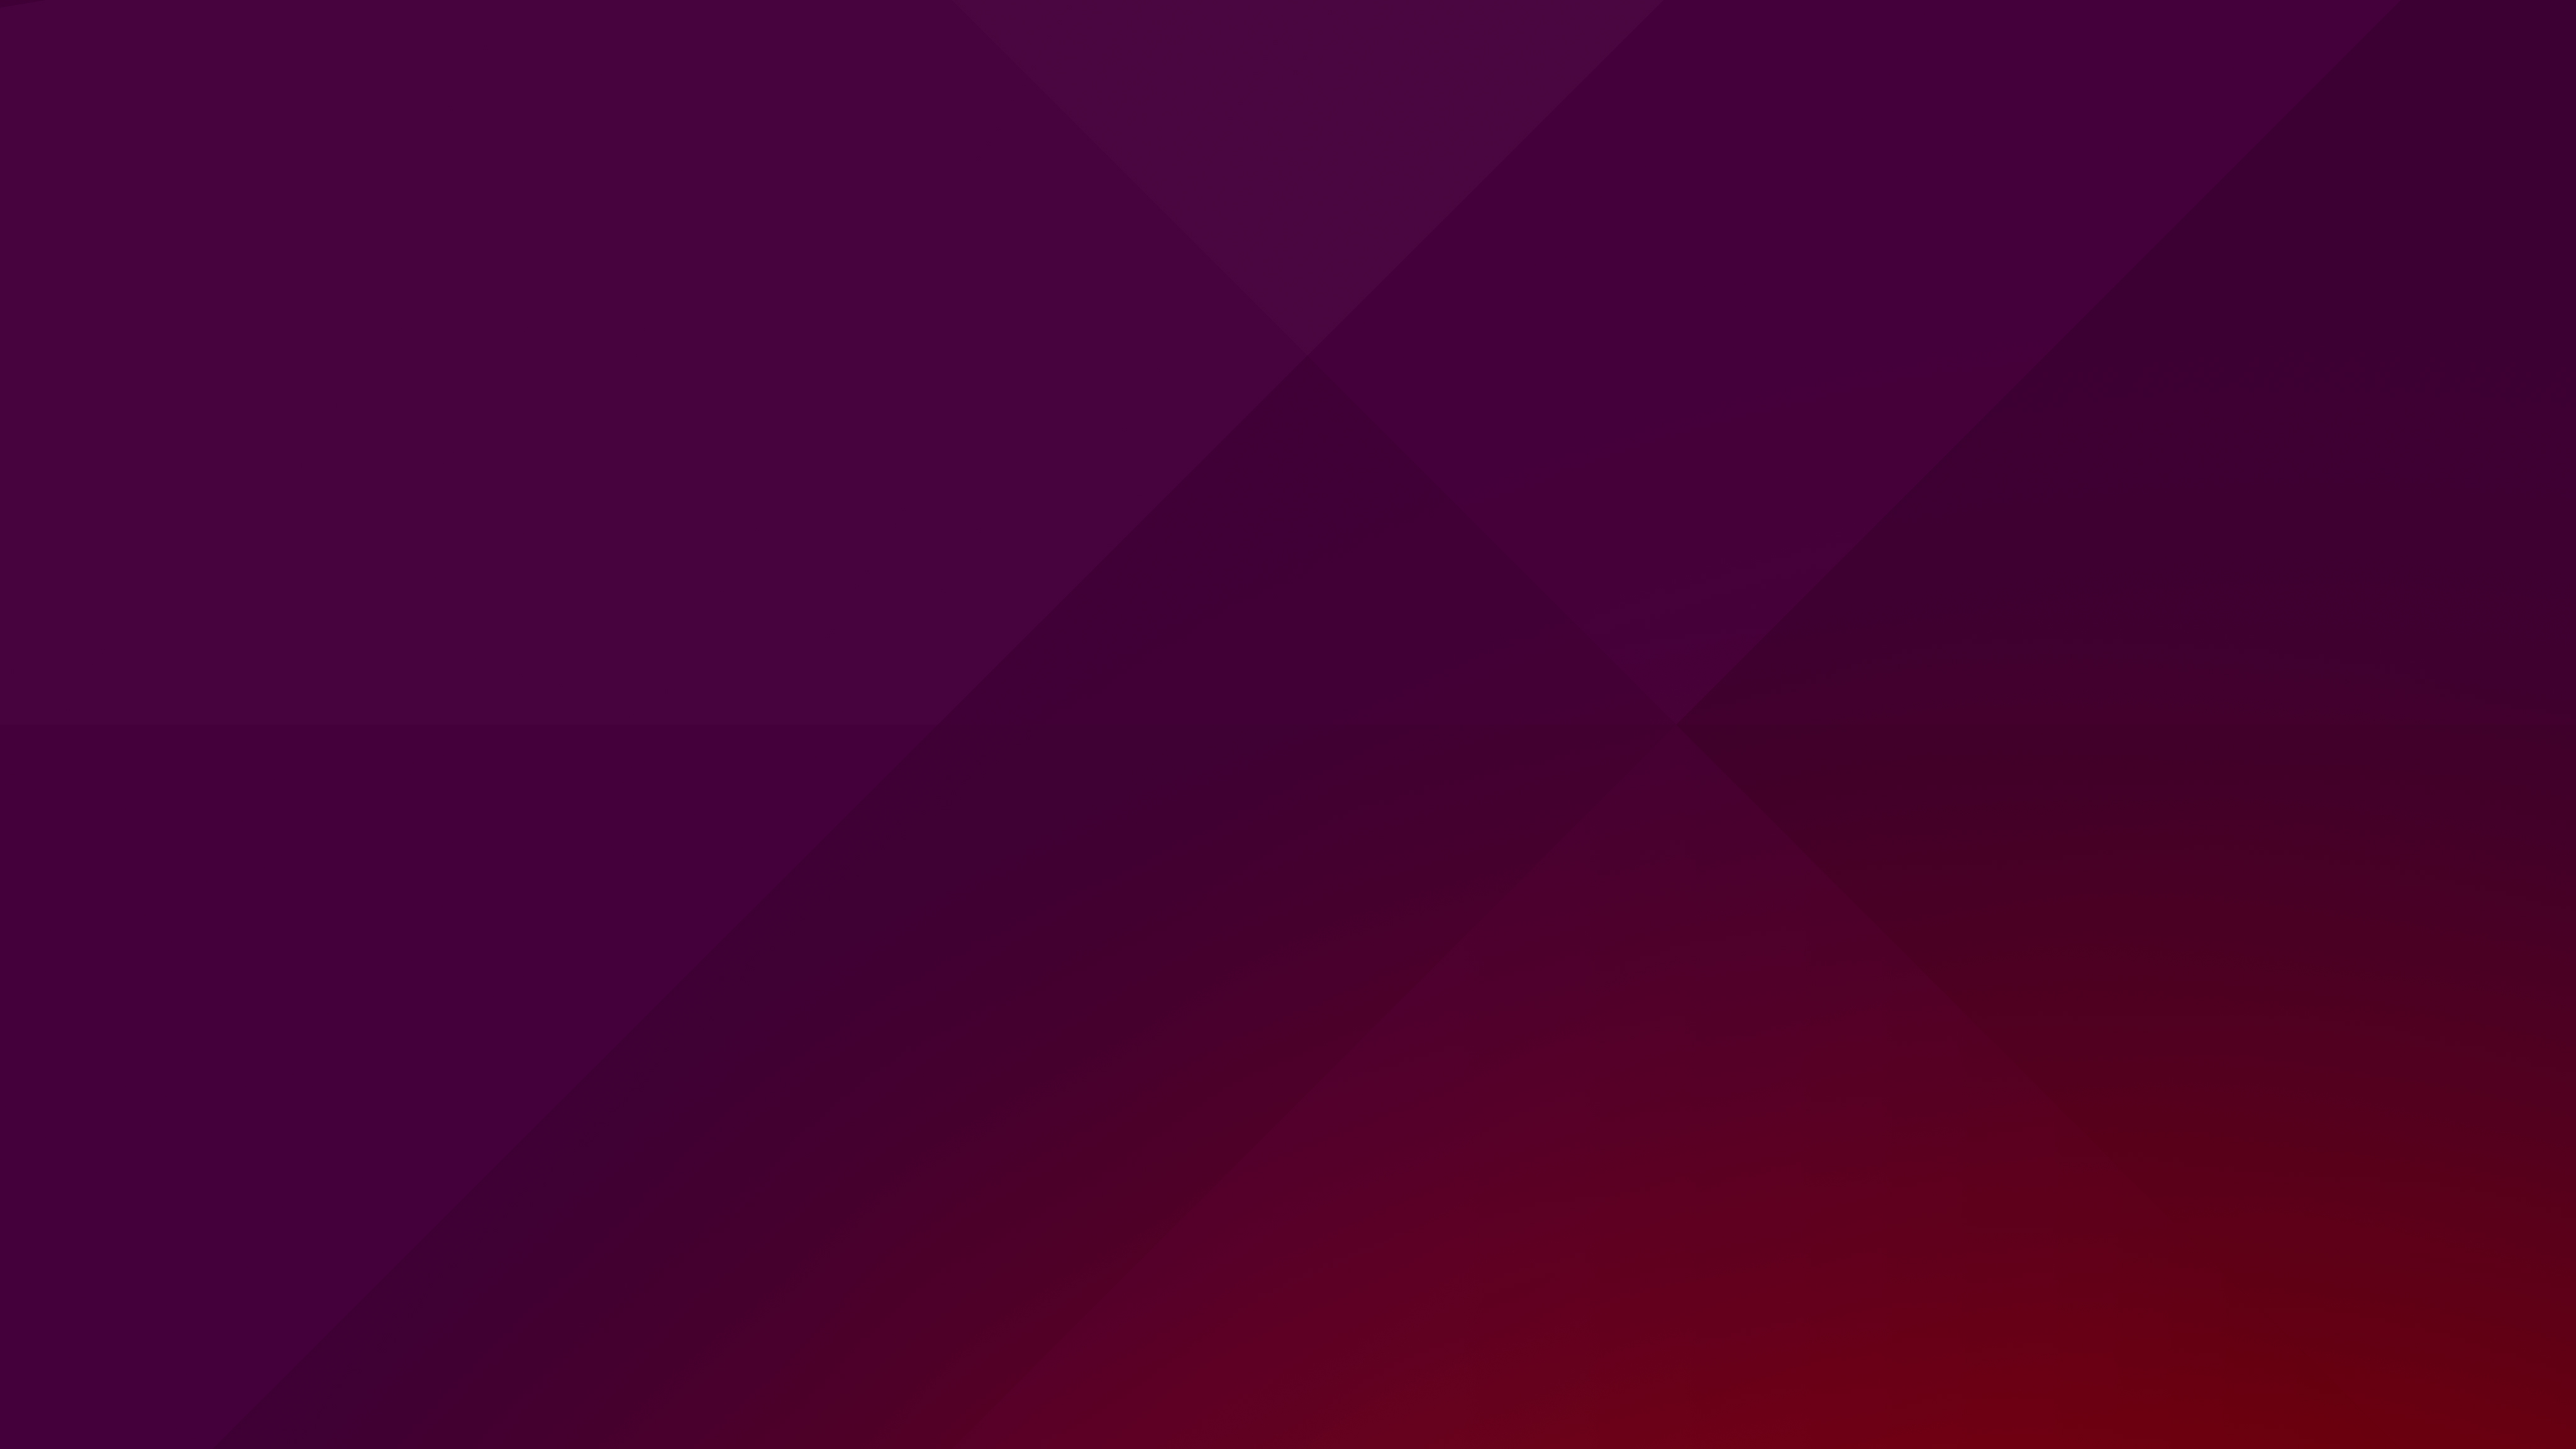 Hãy sẵn sàng cho bộ Desktop wallpaper upcoming Ubuntu mới nhất với những thiết kế ấn tượng và sự đổi mới tuyệt vời. Hãy chắc rằng bạn sẽ luôn có được những bức ảnh mới nhất để truyền cảm hứng cho công việc và cuộc sống của mình.